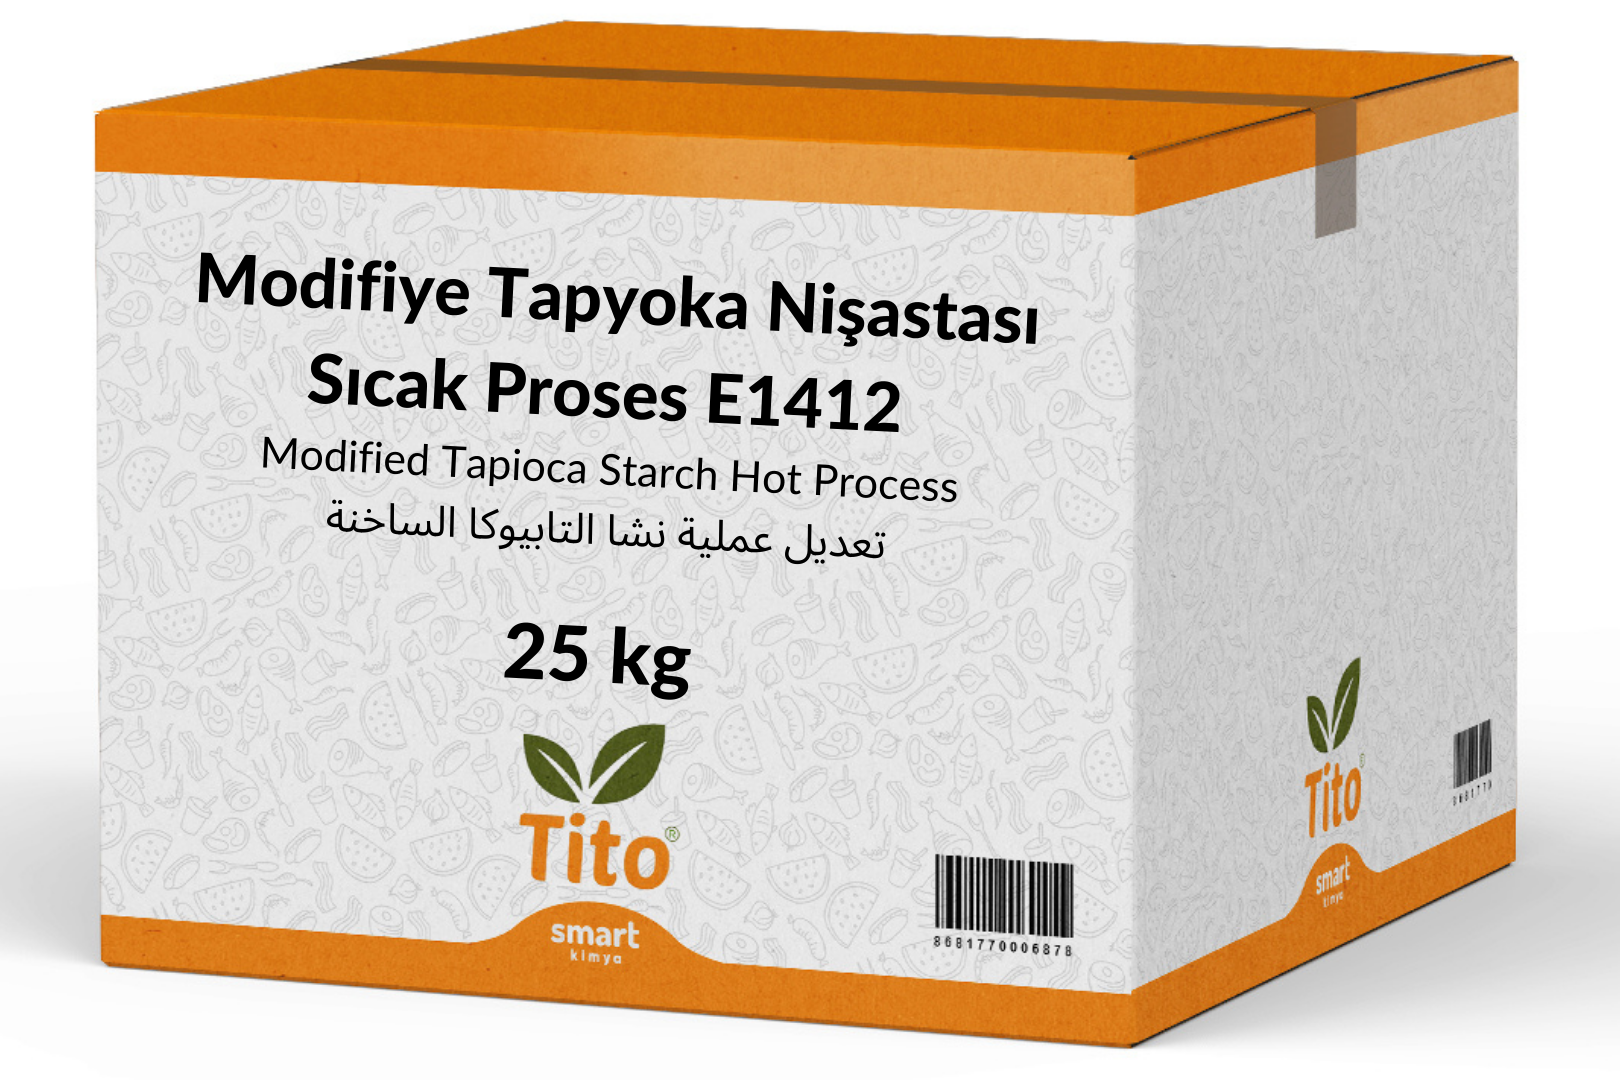 Modifiye Tapyoka Nişastası Sıcak Proses E1412 25 kg